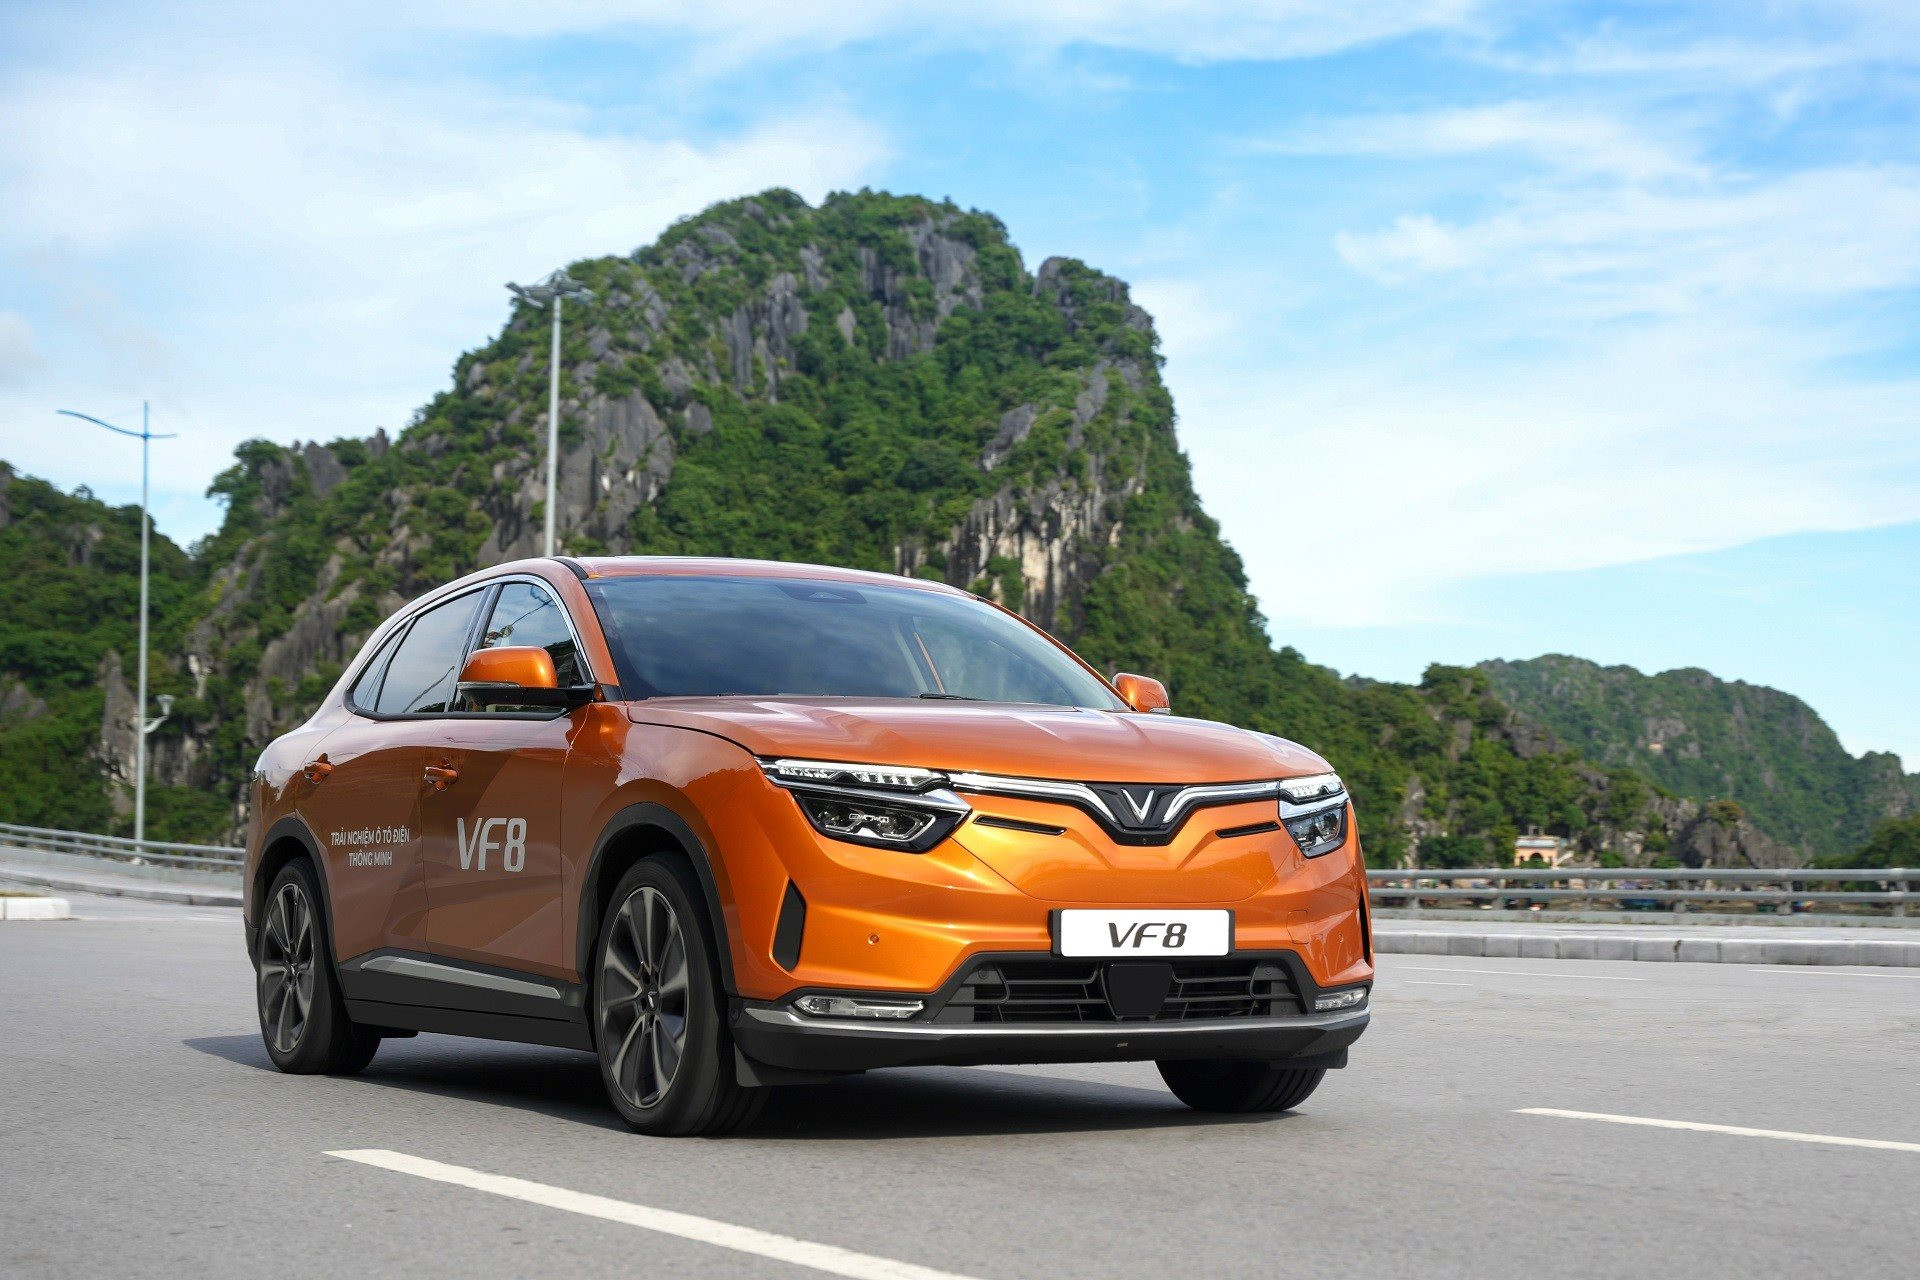 Công ty taxi điện của ông Phạm Nhật Vượng tìm đối tác tài xế: cam kết lương cứng lên đến 11 triệu đồng, hoa hồng 25% tổng doanh thu tháng